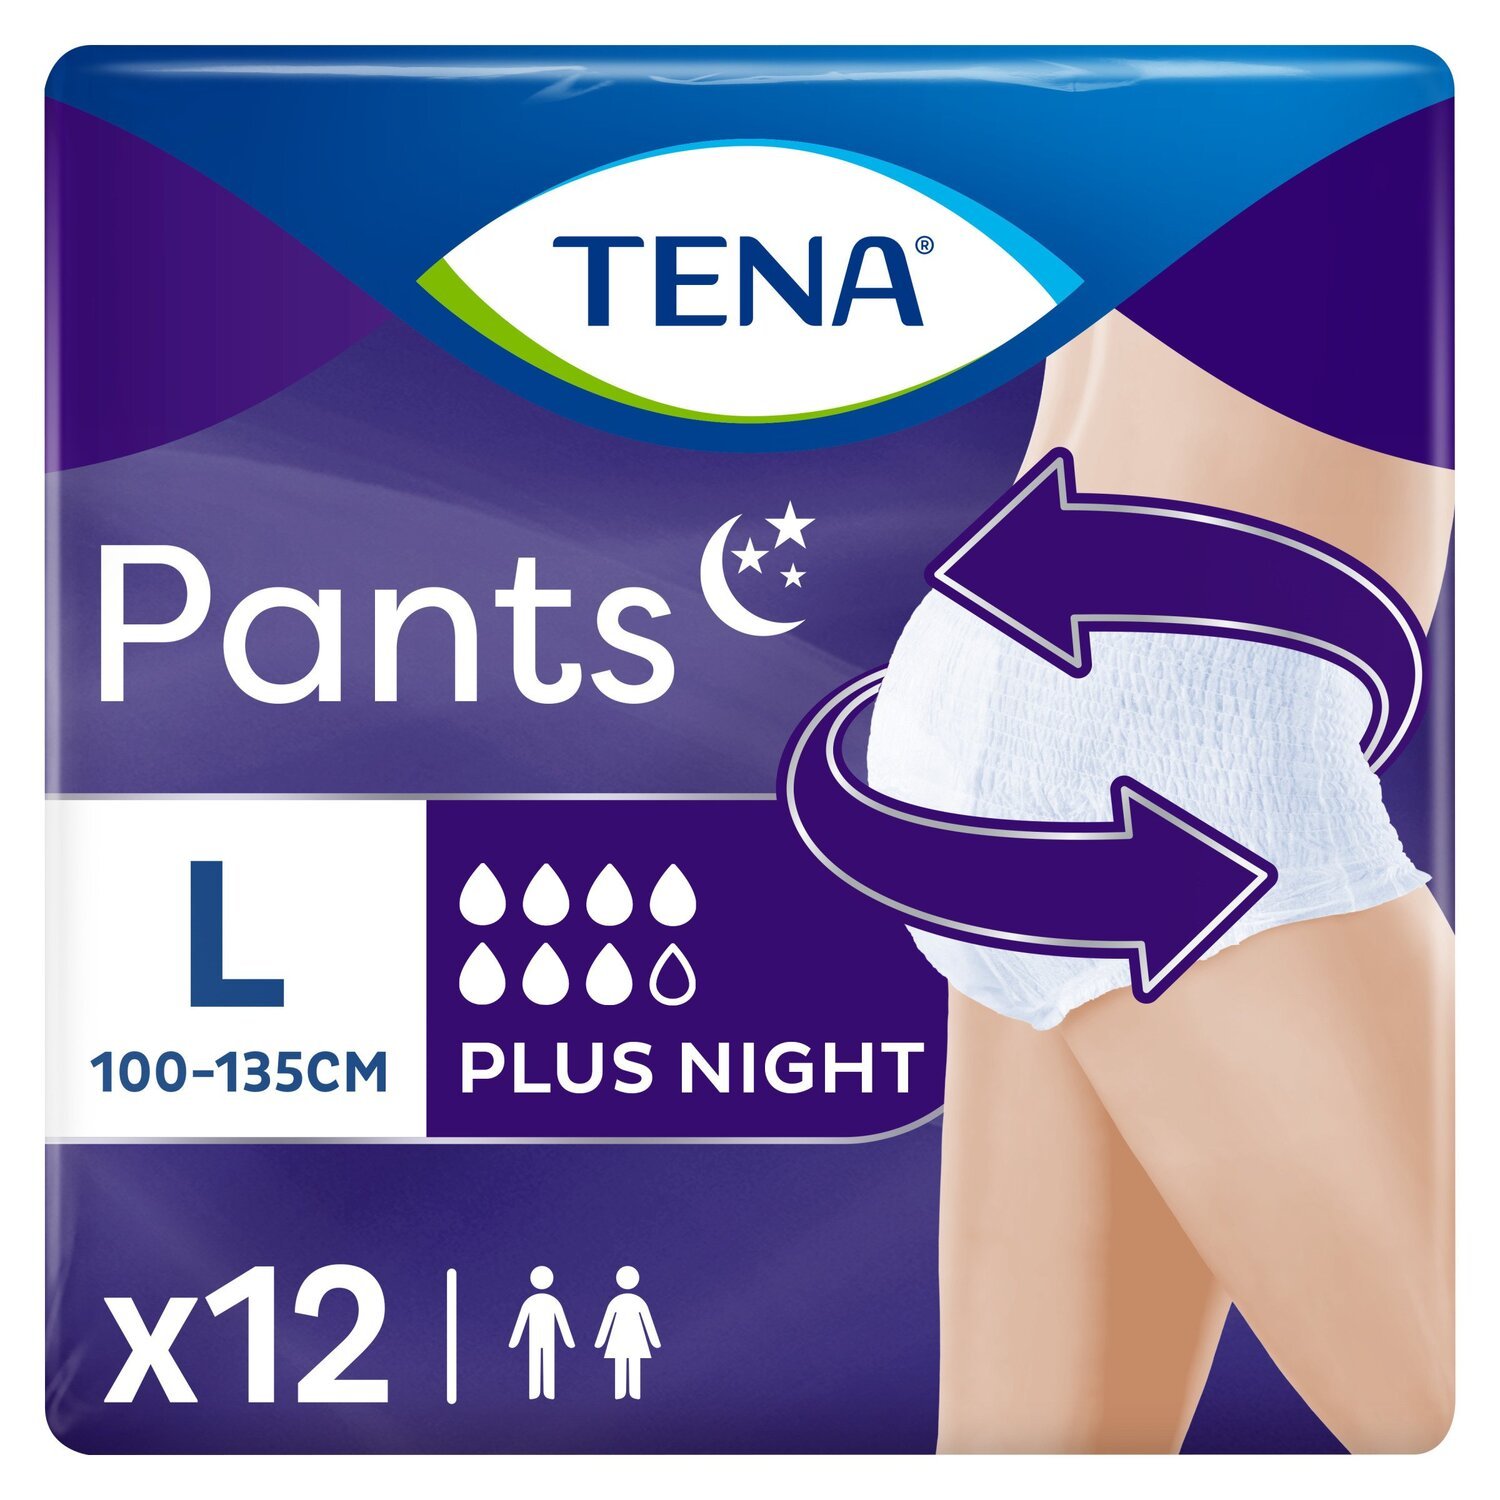 Підгузки для дорослих Tena Pants Plus Night Large 12 шт.фото